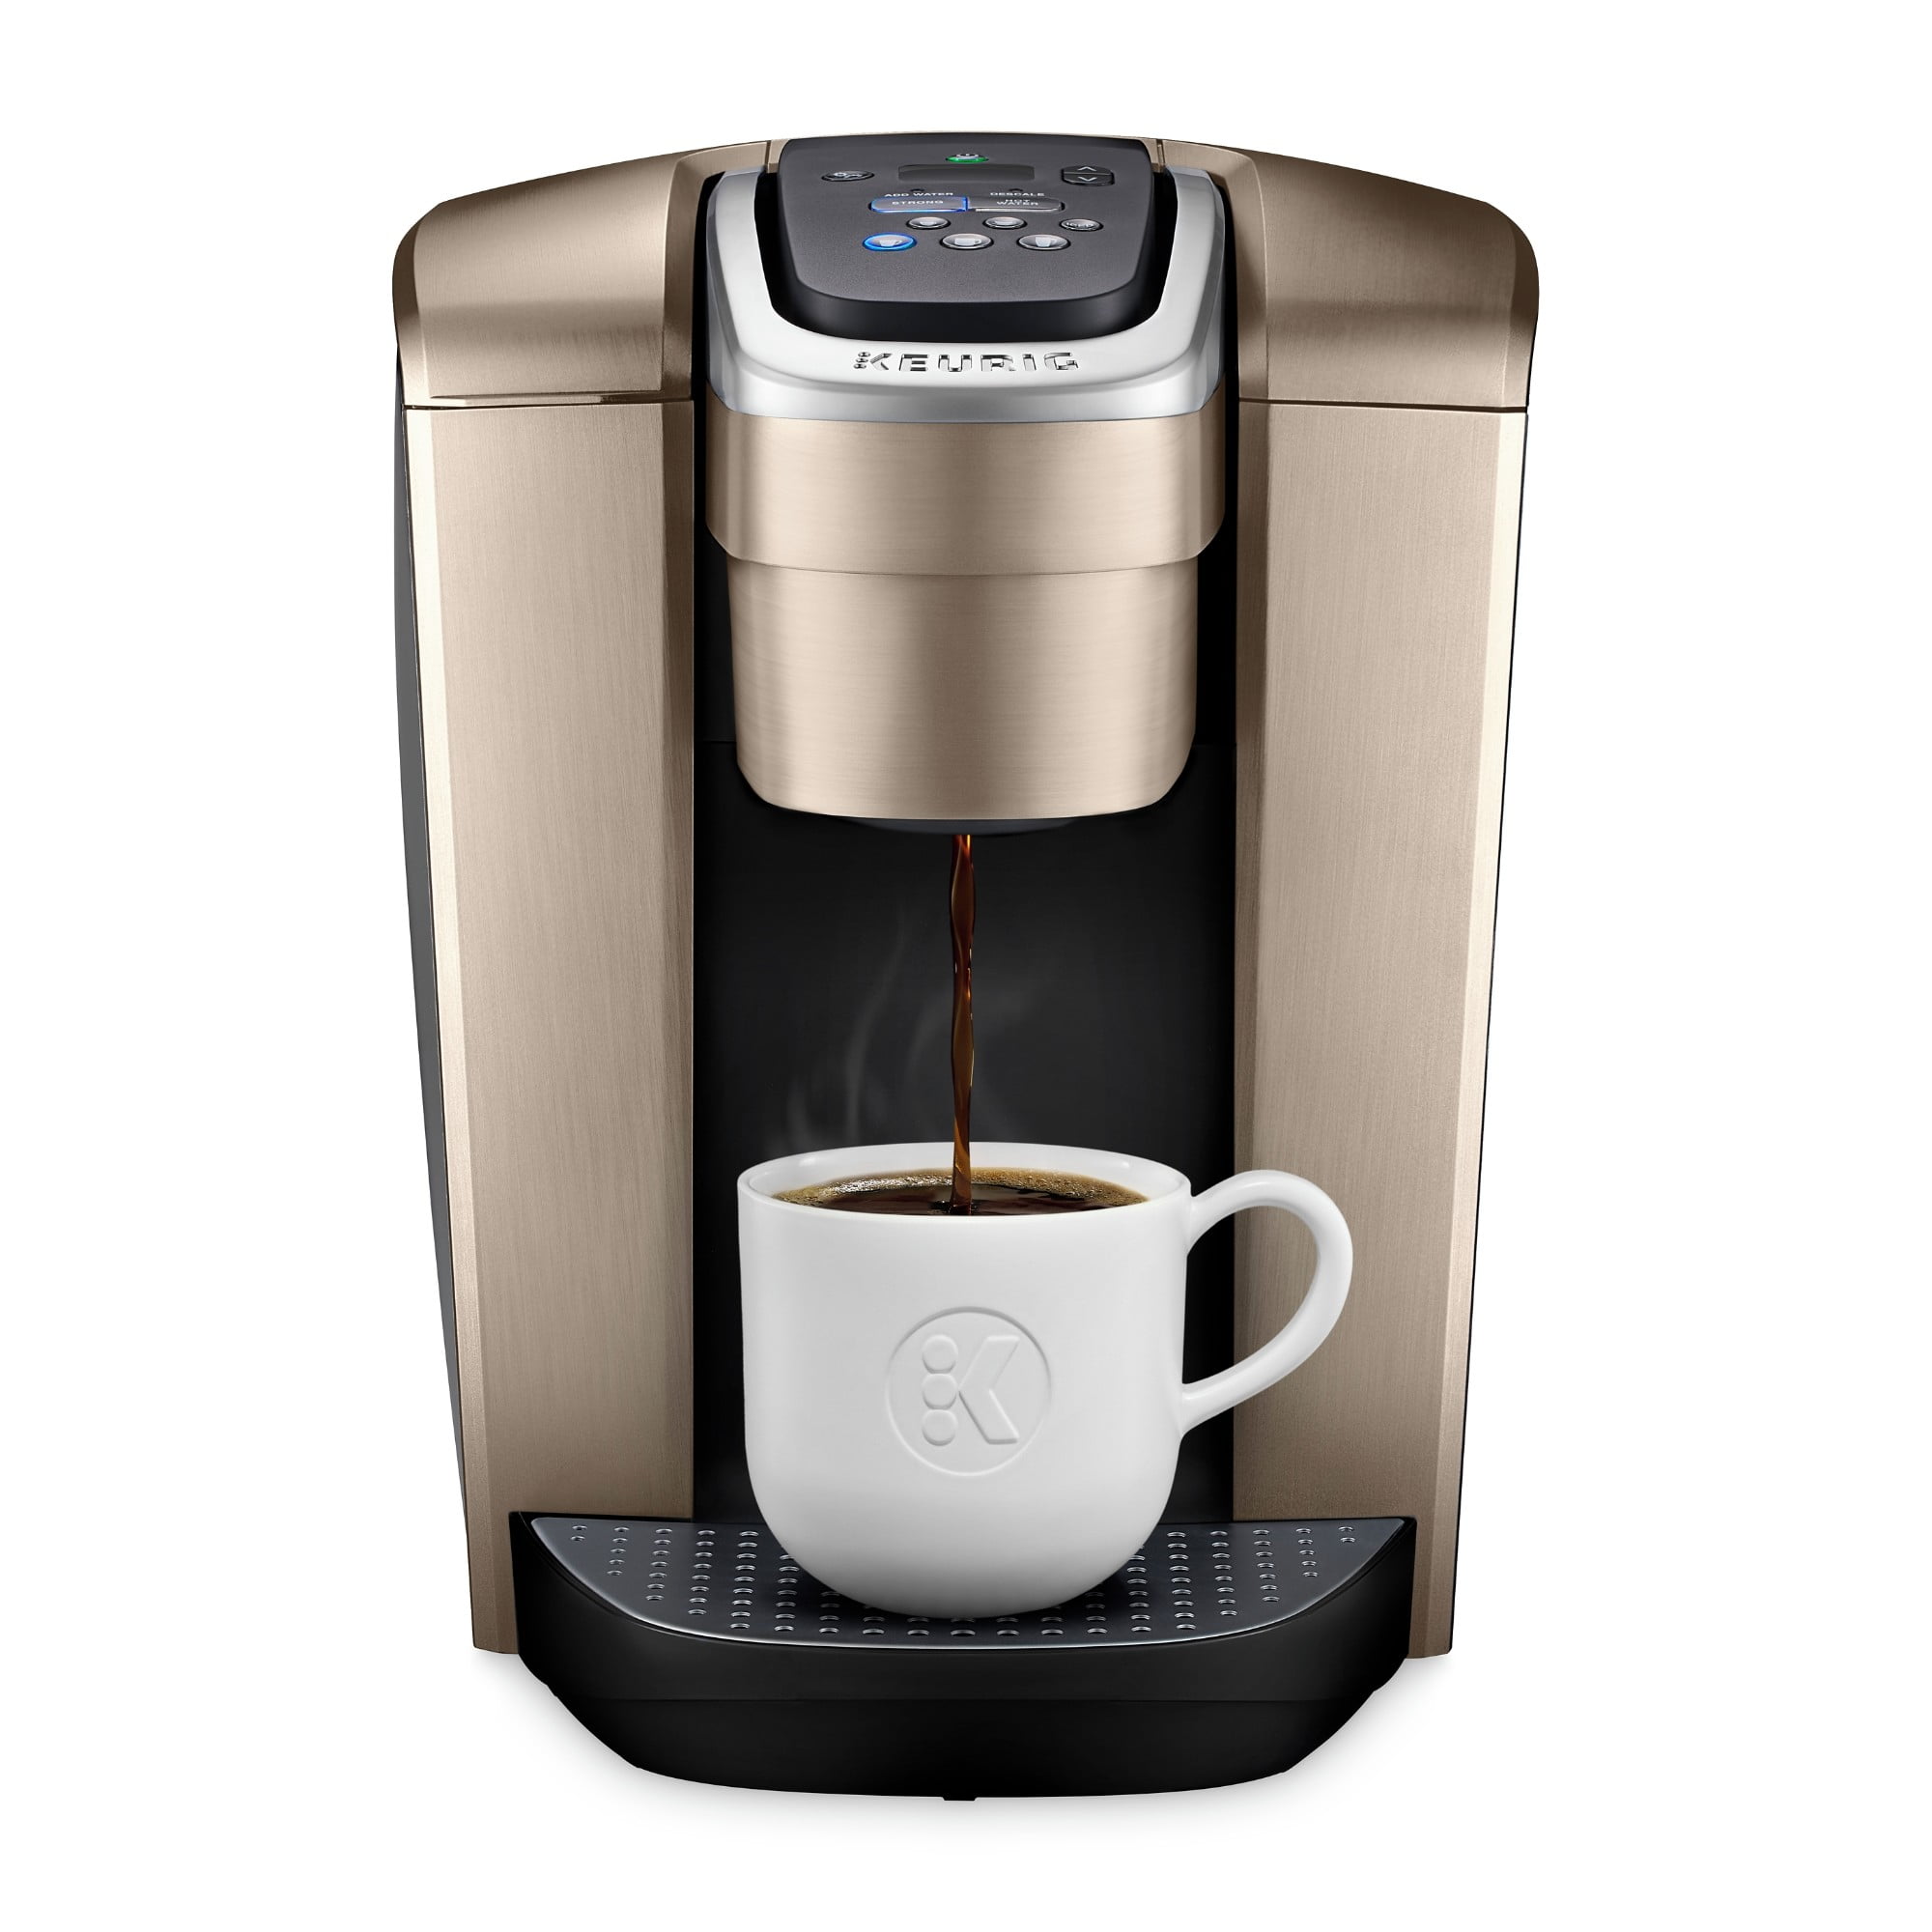 Keurig K-Elite Coffee Maker, Single Serve K-Cup Pod Coffee Brewer